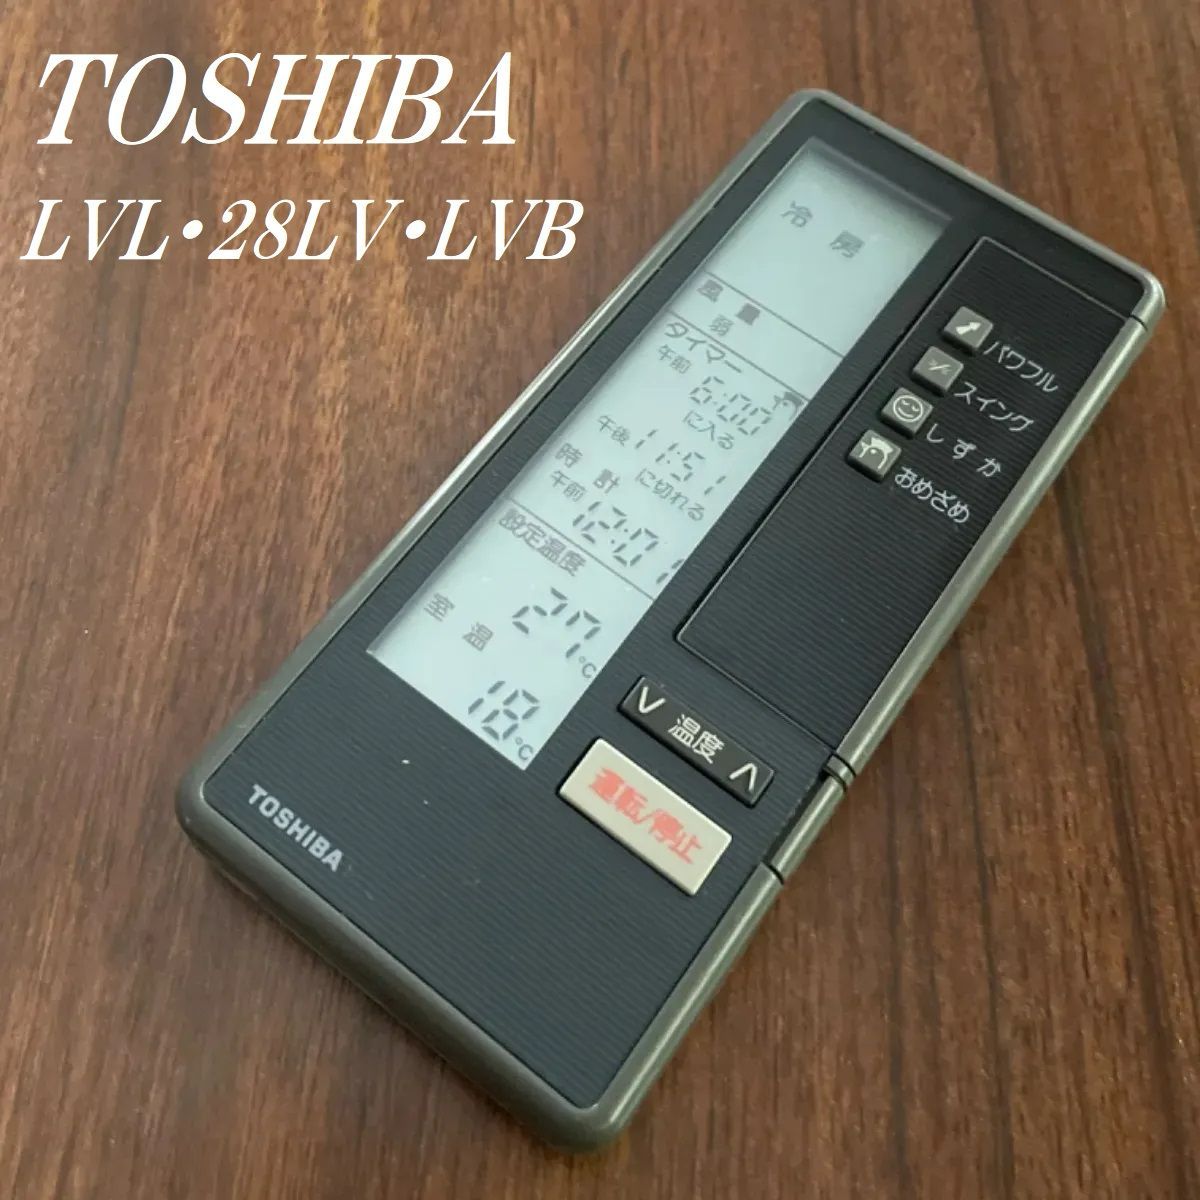 東芝 LVL・28LV・LVB TOSHIBA LVL28LVLVB リモコン エアコン 除菌済み